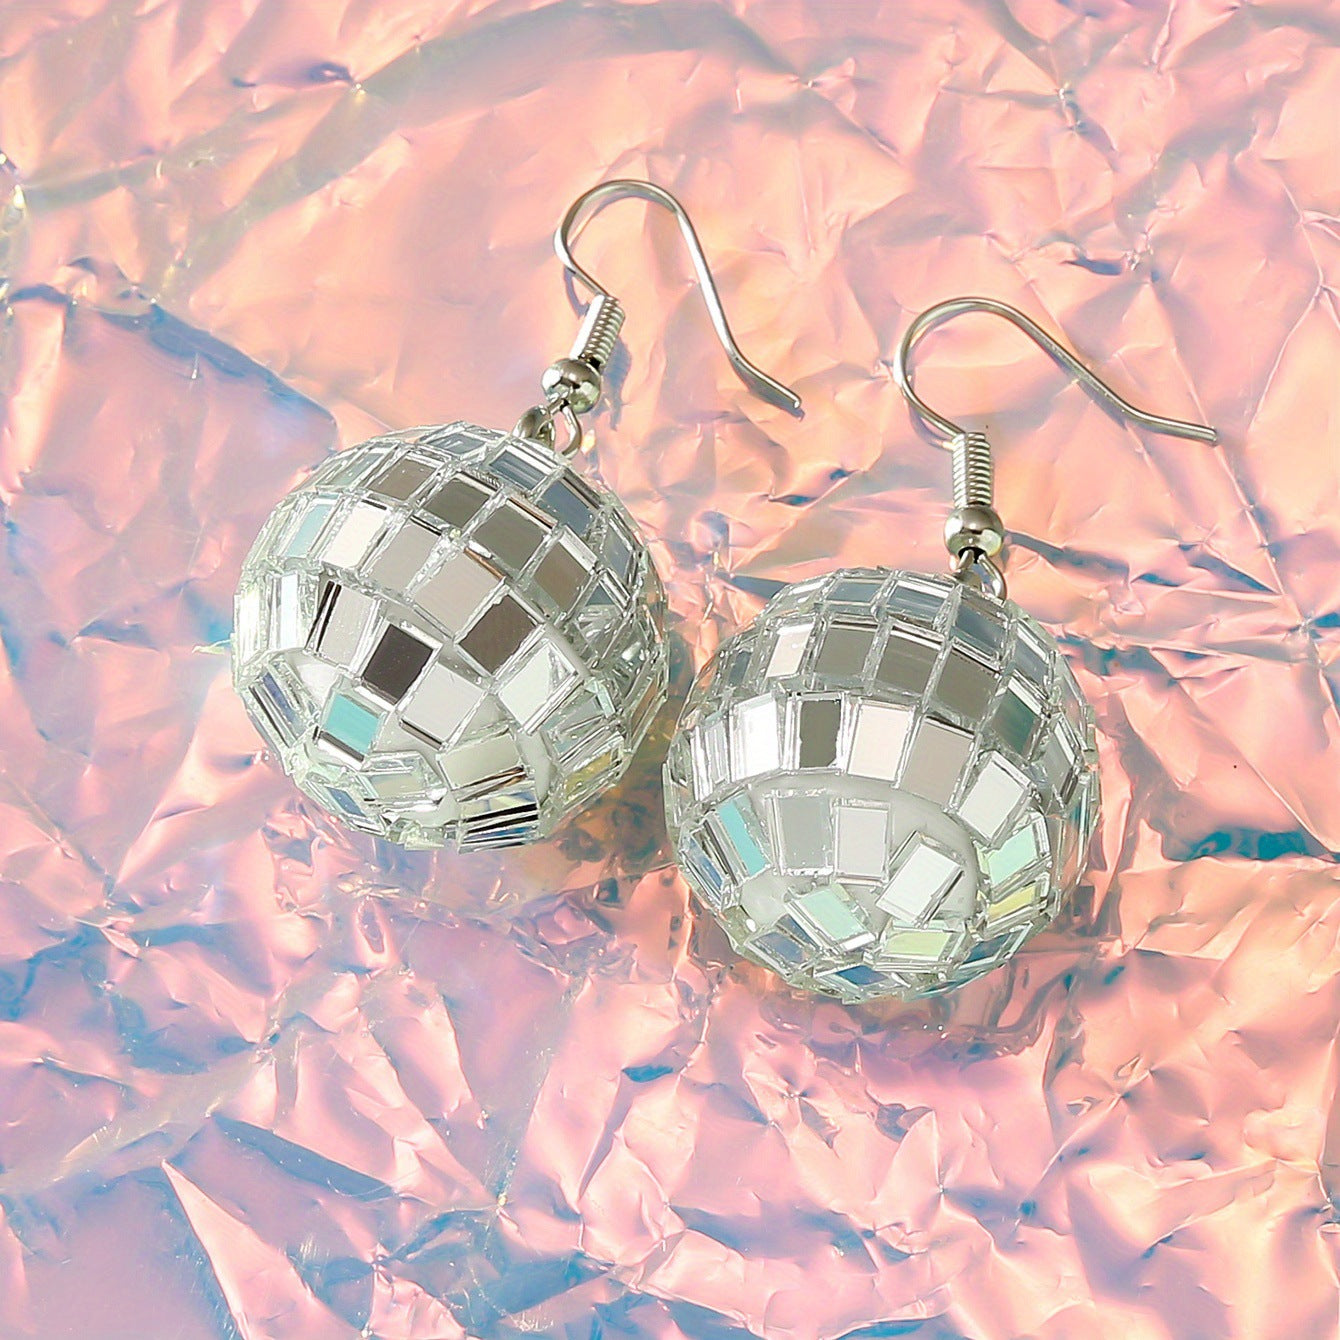 silver mirror ball earrings, taylor swift style